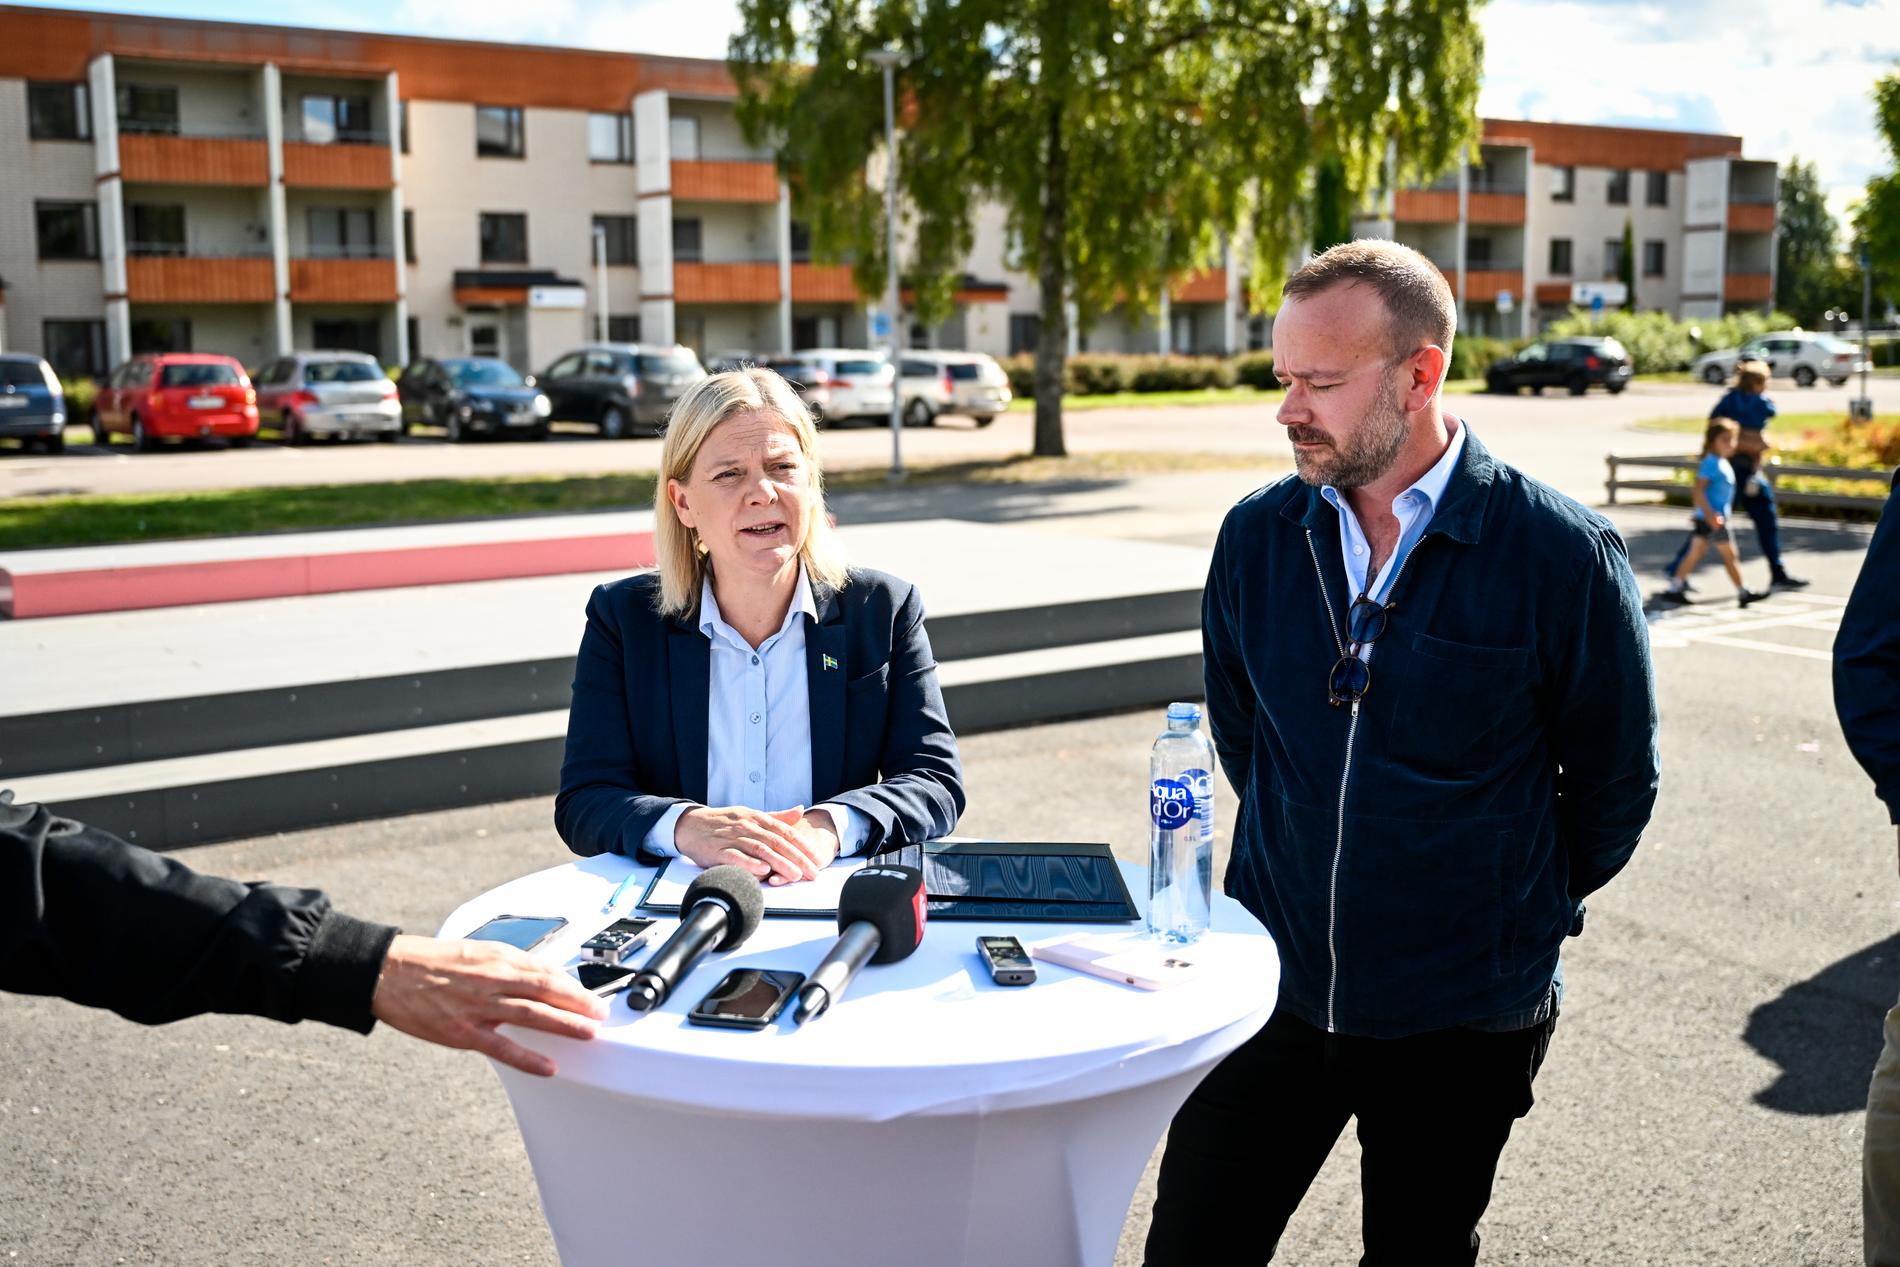 Borlänges kommunalråd Erik Nises (till höger) vill köpa tillbaka stadshuset från krisande SBB. S-ledaren Magdalena Andersson (till vänster) ställde sig nyligen bakom V-kravet på att snabbutreda statlig förköpsrätt.